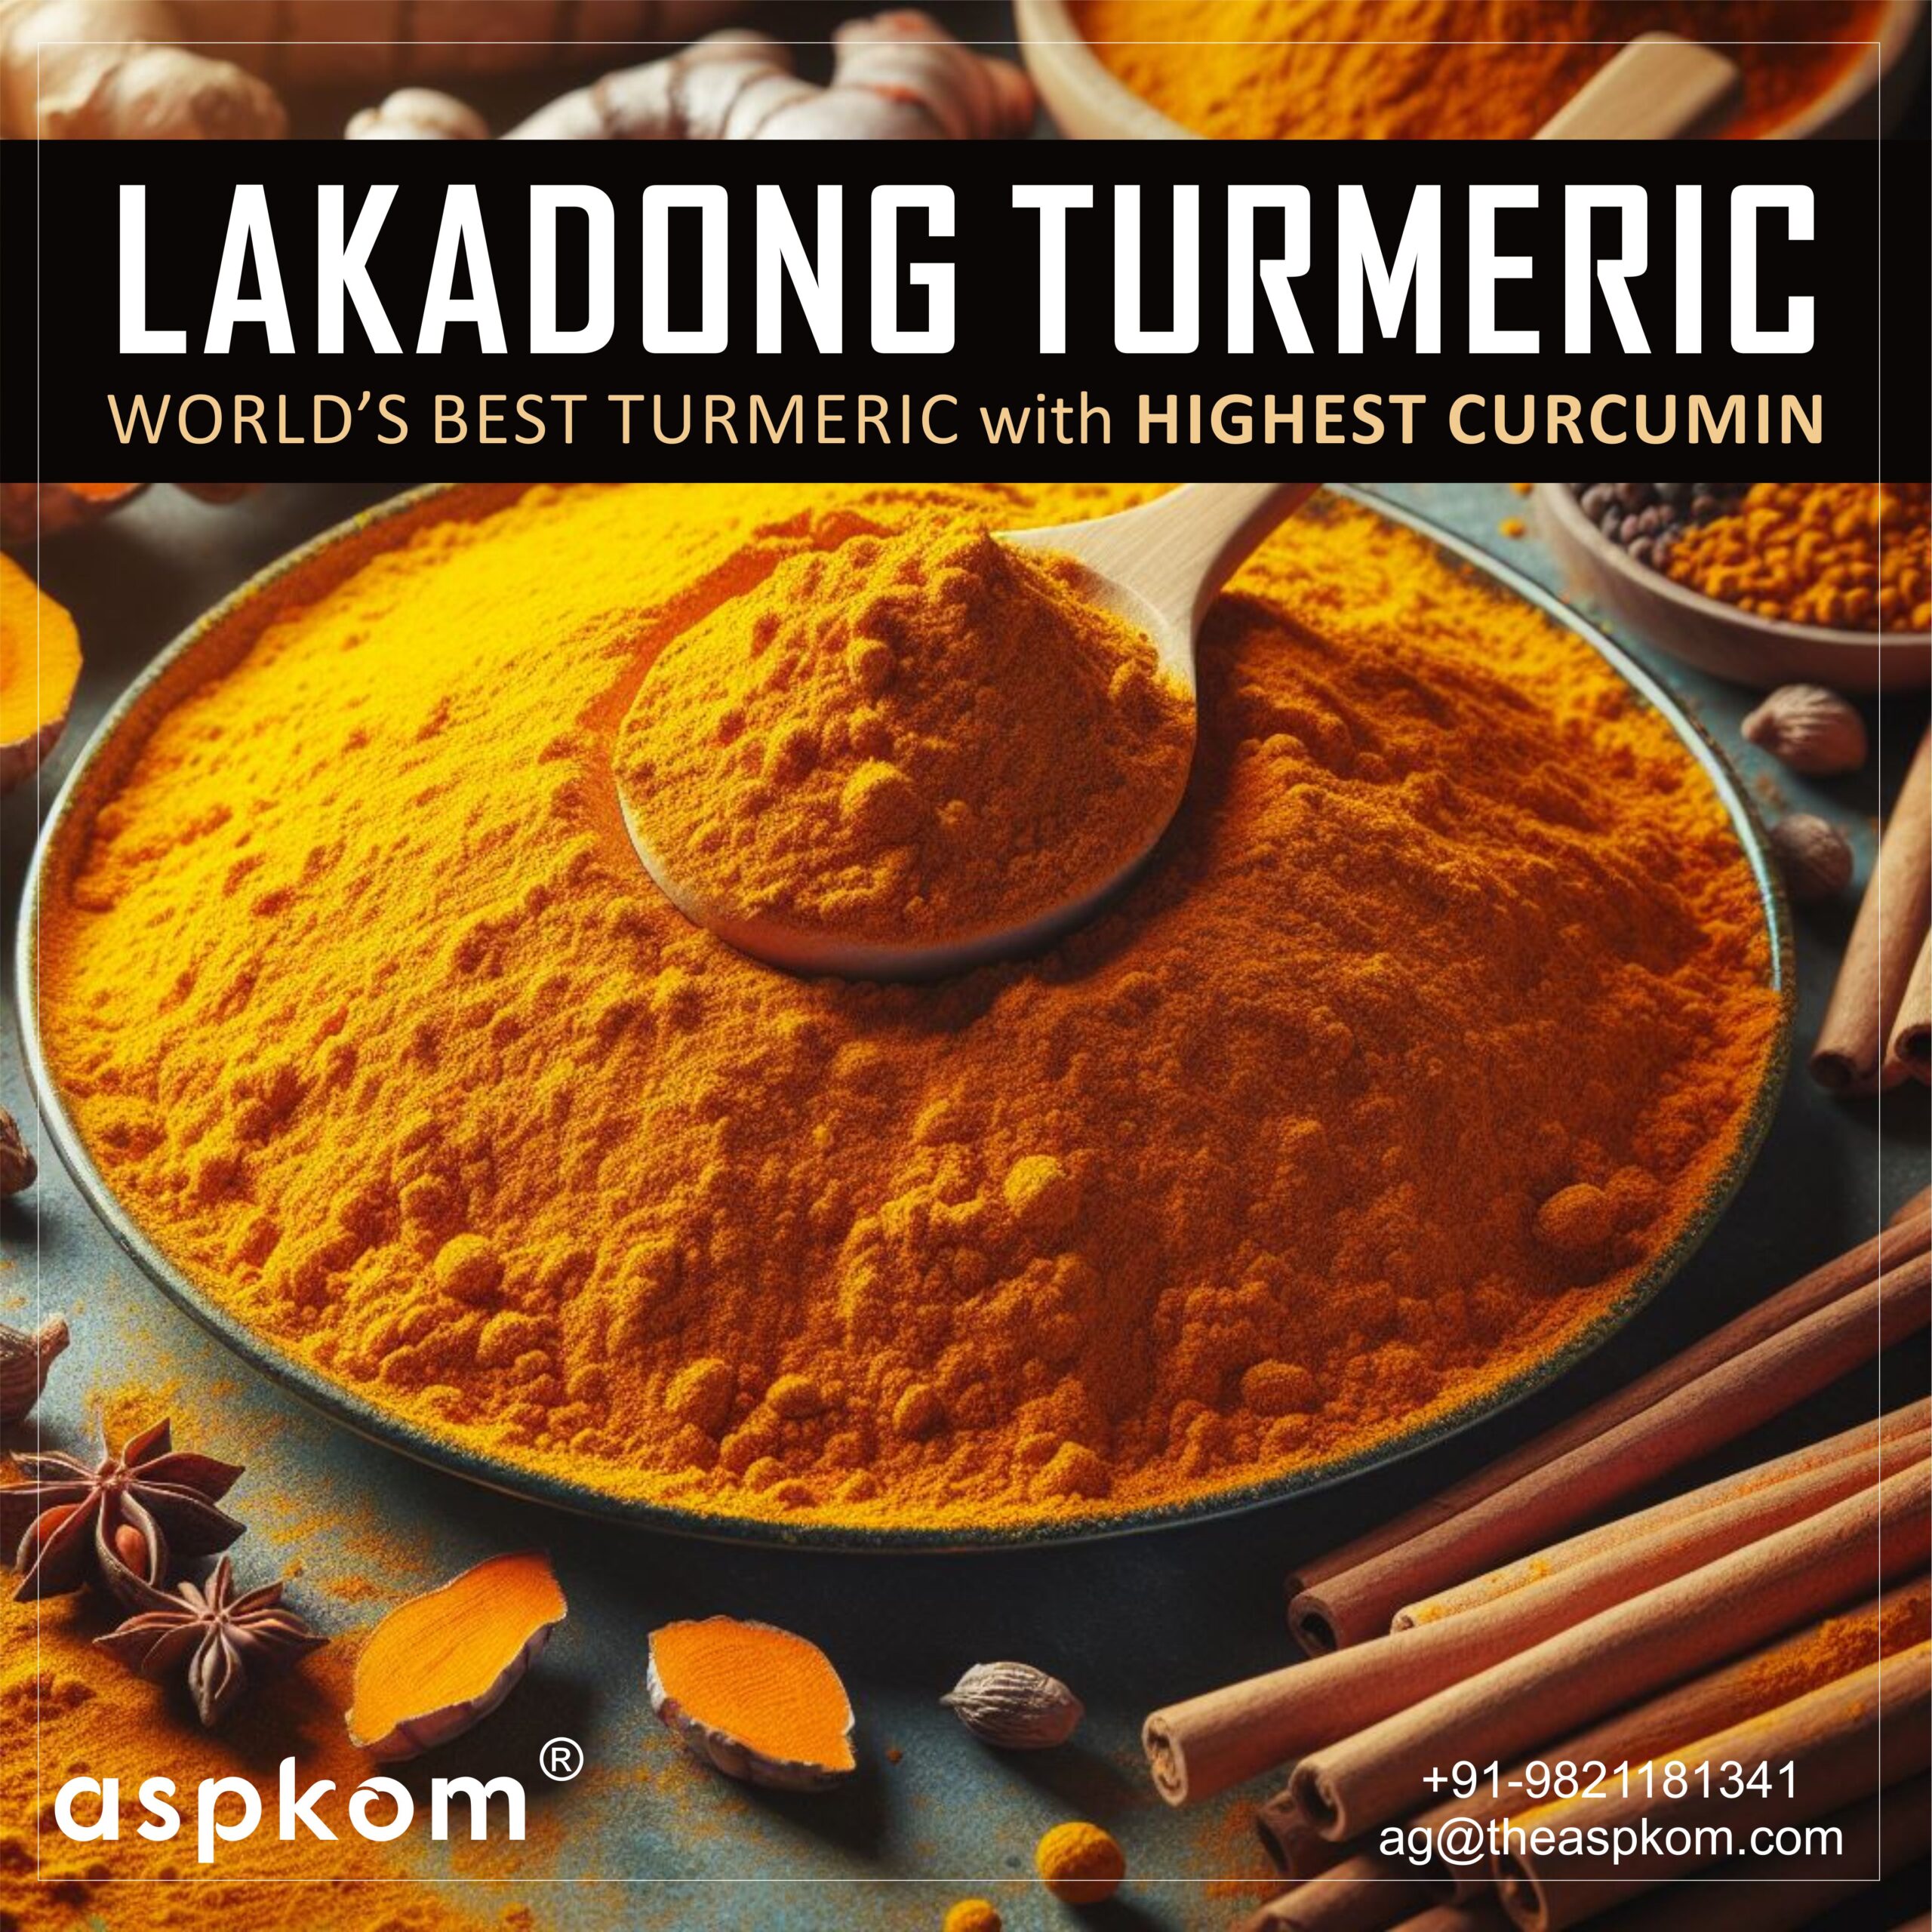 Aspkom's Lakadong Turmeric Powder